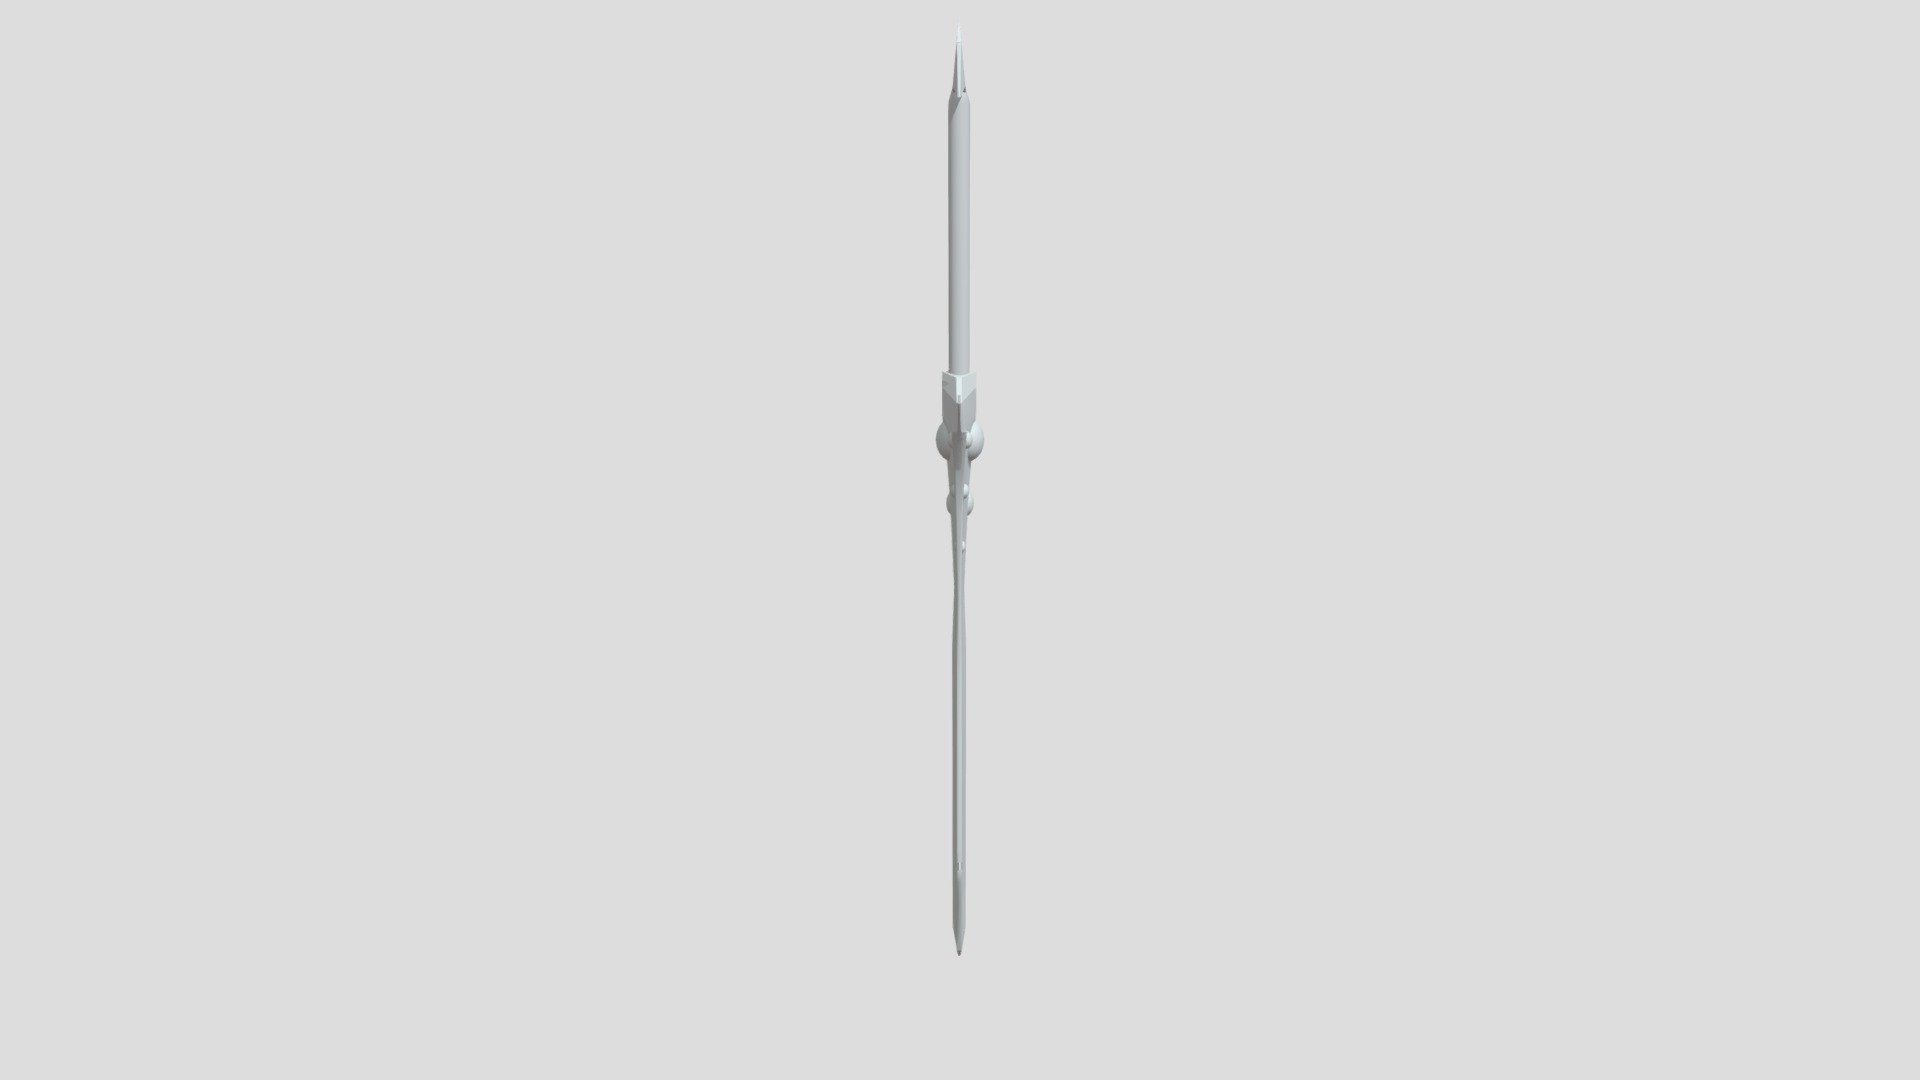 Sword1 - 3D model by DaniKovalevskij [fea7131] - Sketchfab